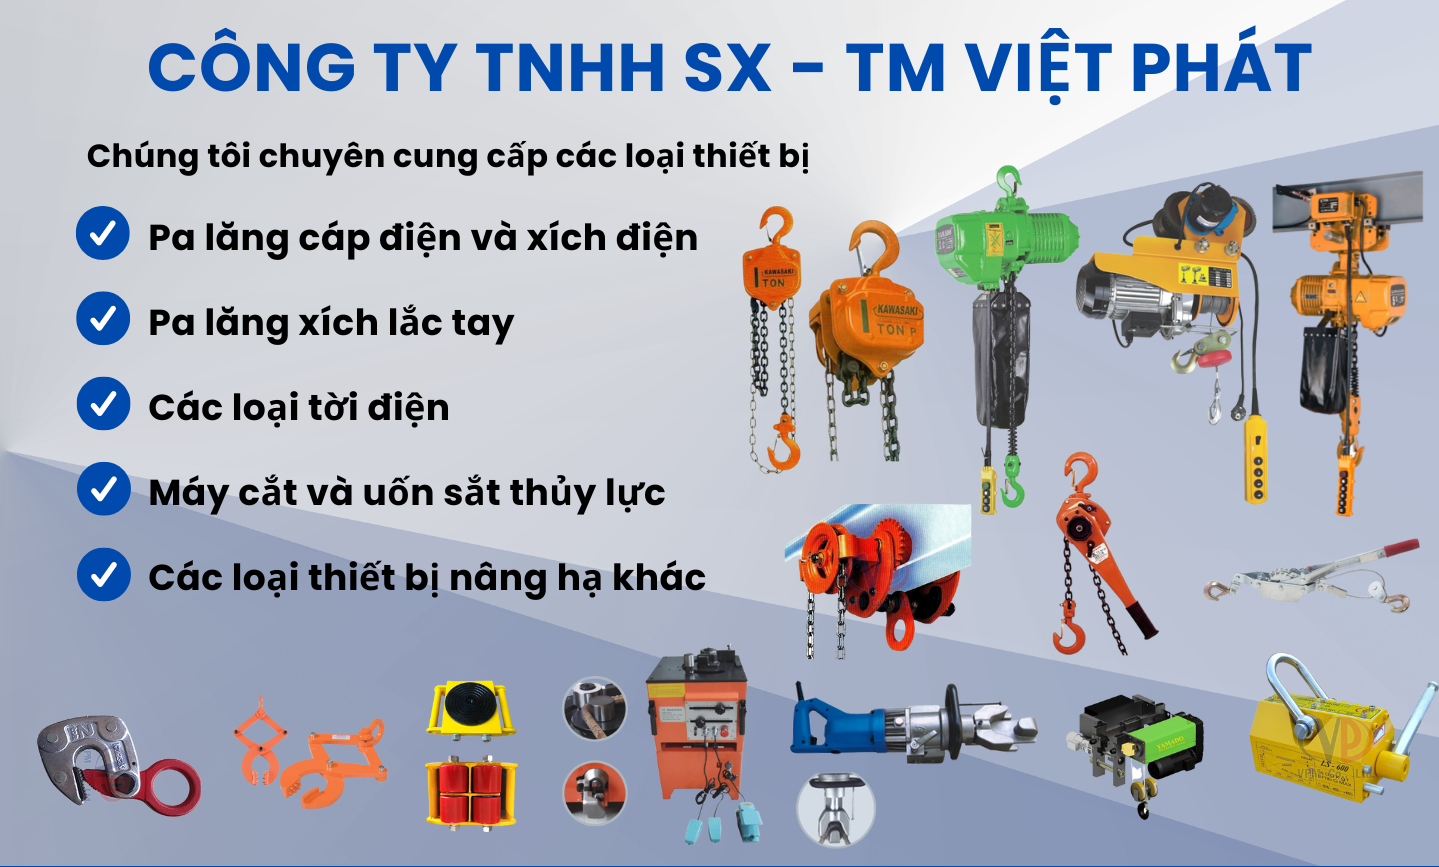 Công Ty TNHH Sản Xuất - Thương Mại Việt Phát - Chuyên cung cấp các thiết bị công nghiệp